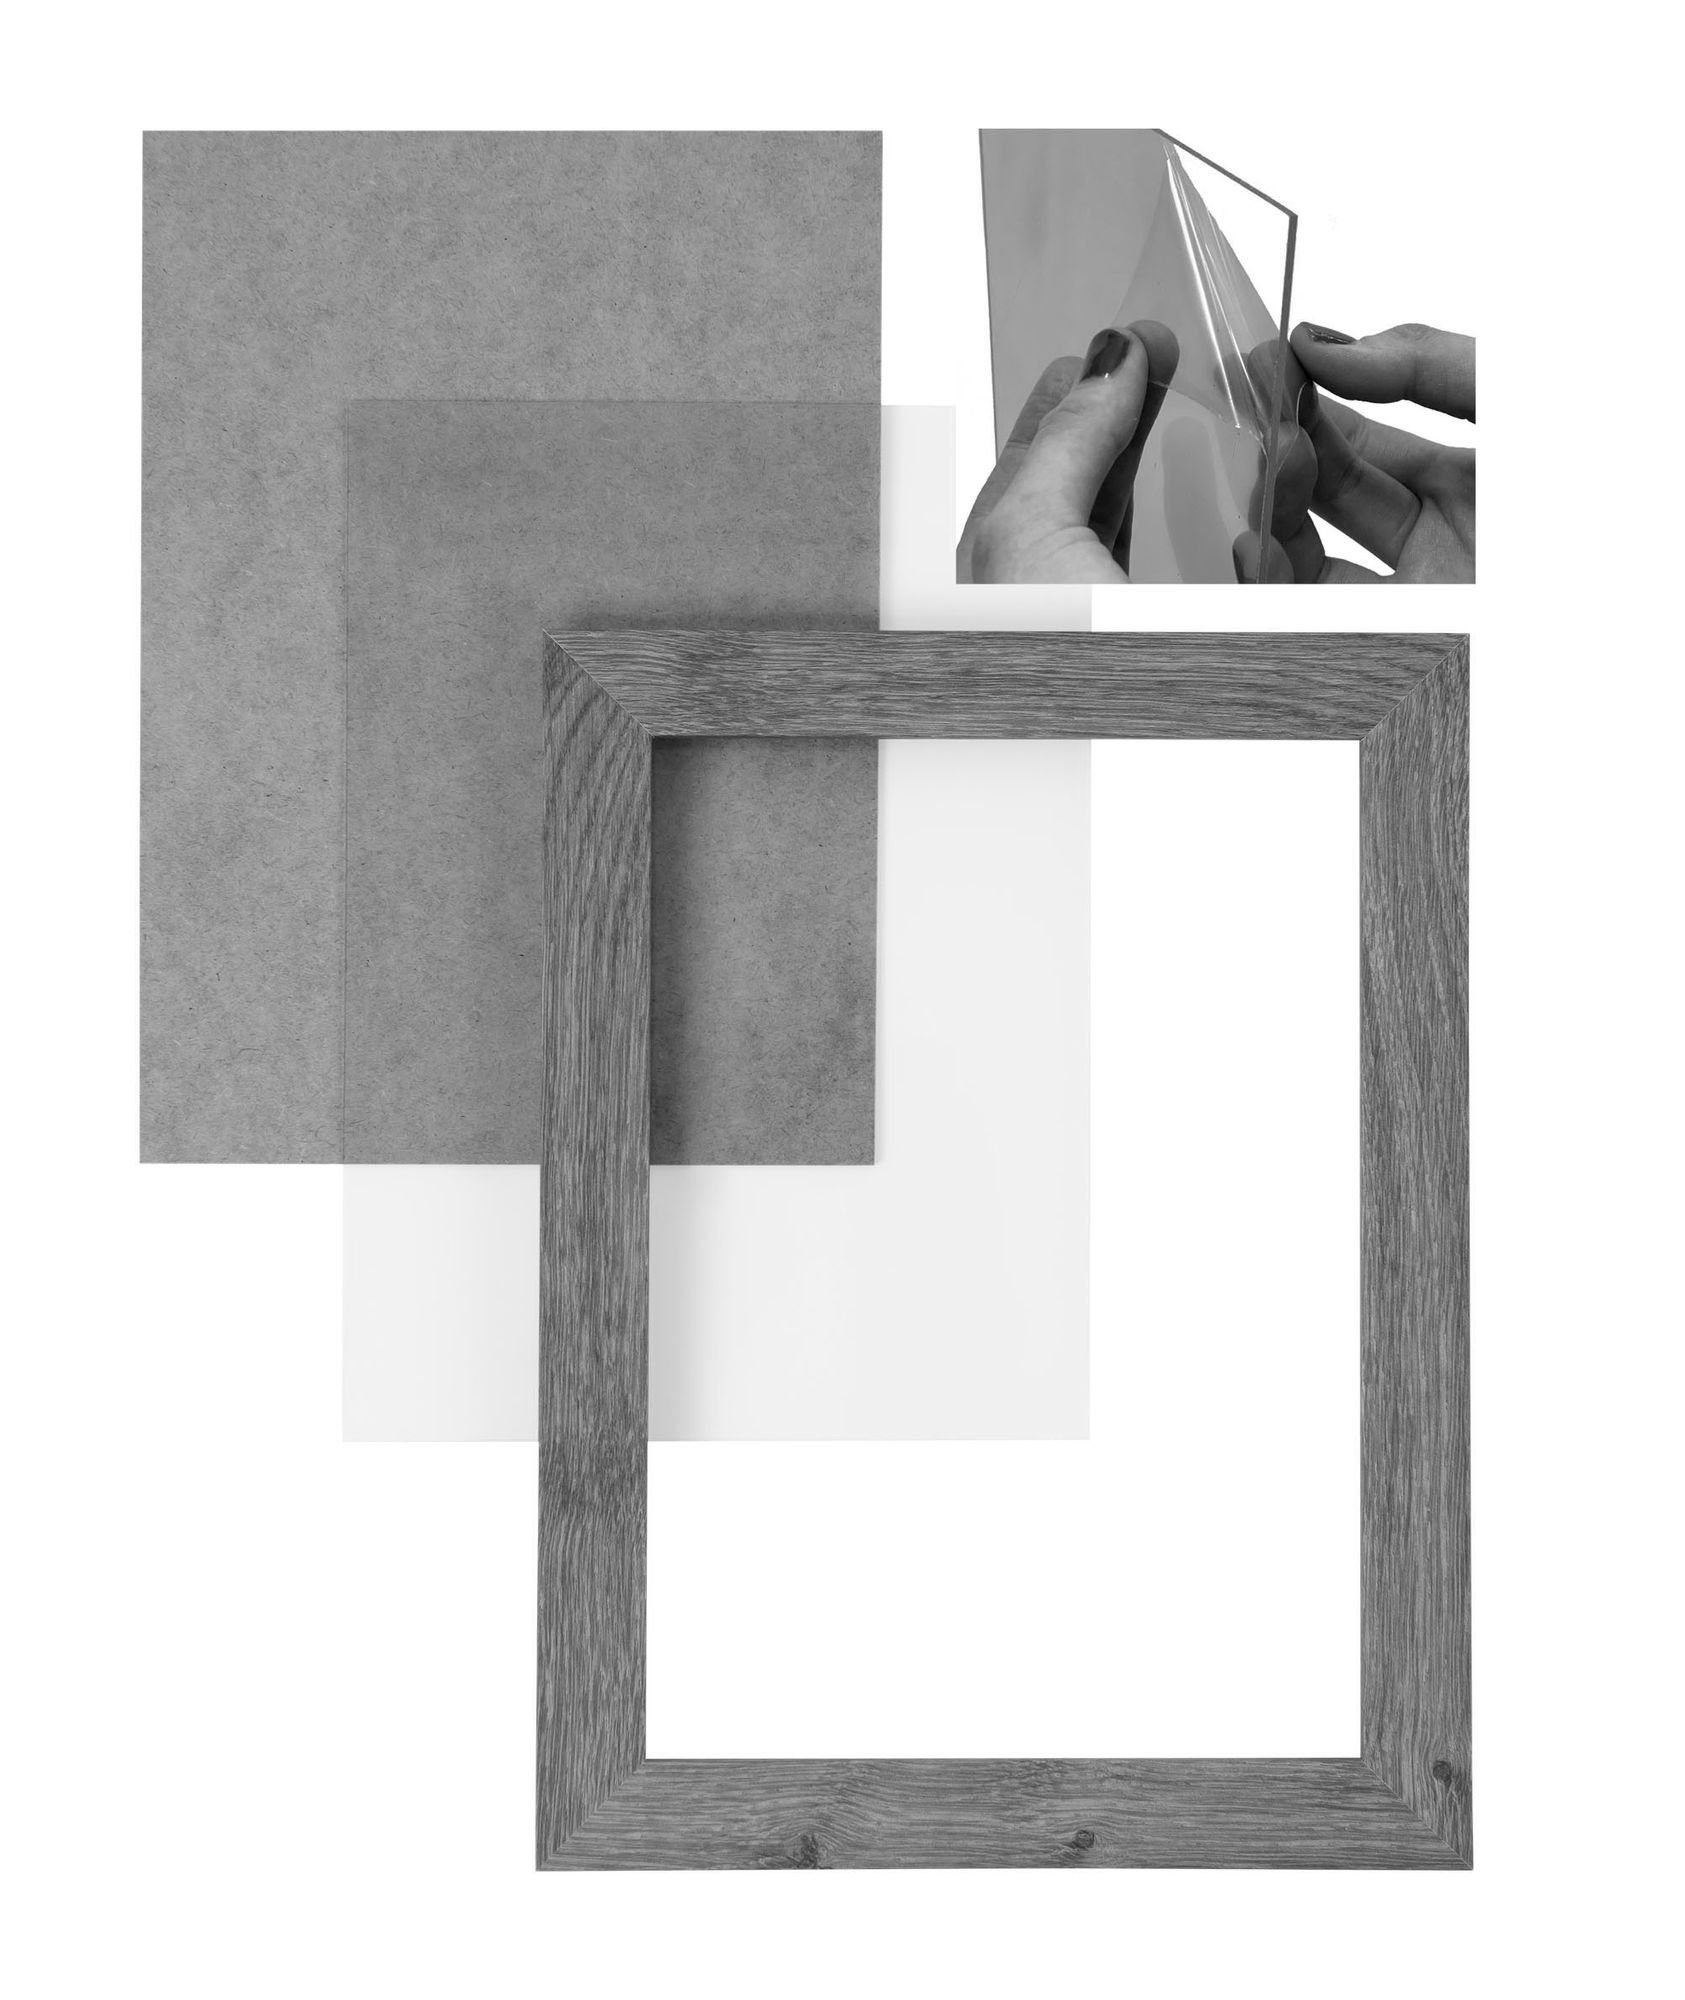 Bilderrahmen altholz FSC® nach Aufhänger und Clamaro Moderner Rückwand Holz handgefertigt CLAMARO in 'Collage' 30x46 inkl. Rahmen Maß MDF Bilderrahmen eckiger eiche Acrylglas,